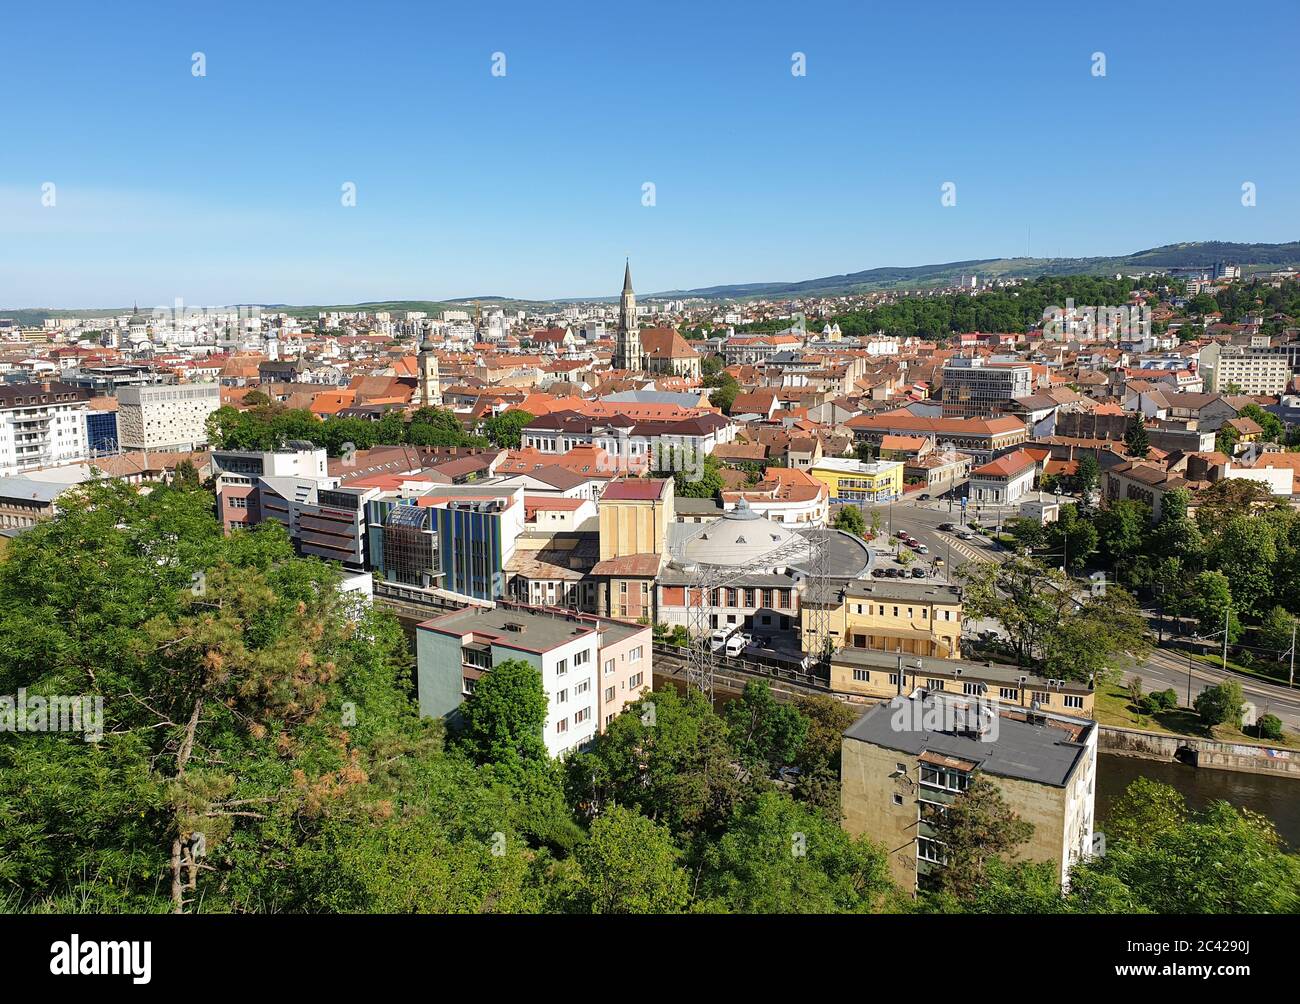 Cluj-Napoca, Rumänien - 23. Mai 2020: Stadtbild mit Innenstadtgebäuden nach Coronavirus-Lockdown-Leichtigkeit, vom Belvedere-Hügel aus gesehen, im Sommer mit Be Stockfoto